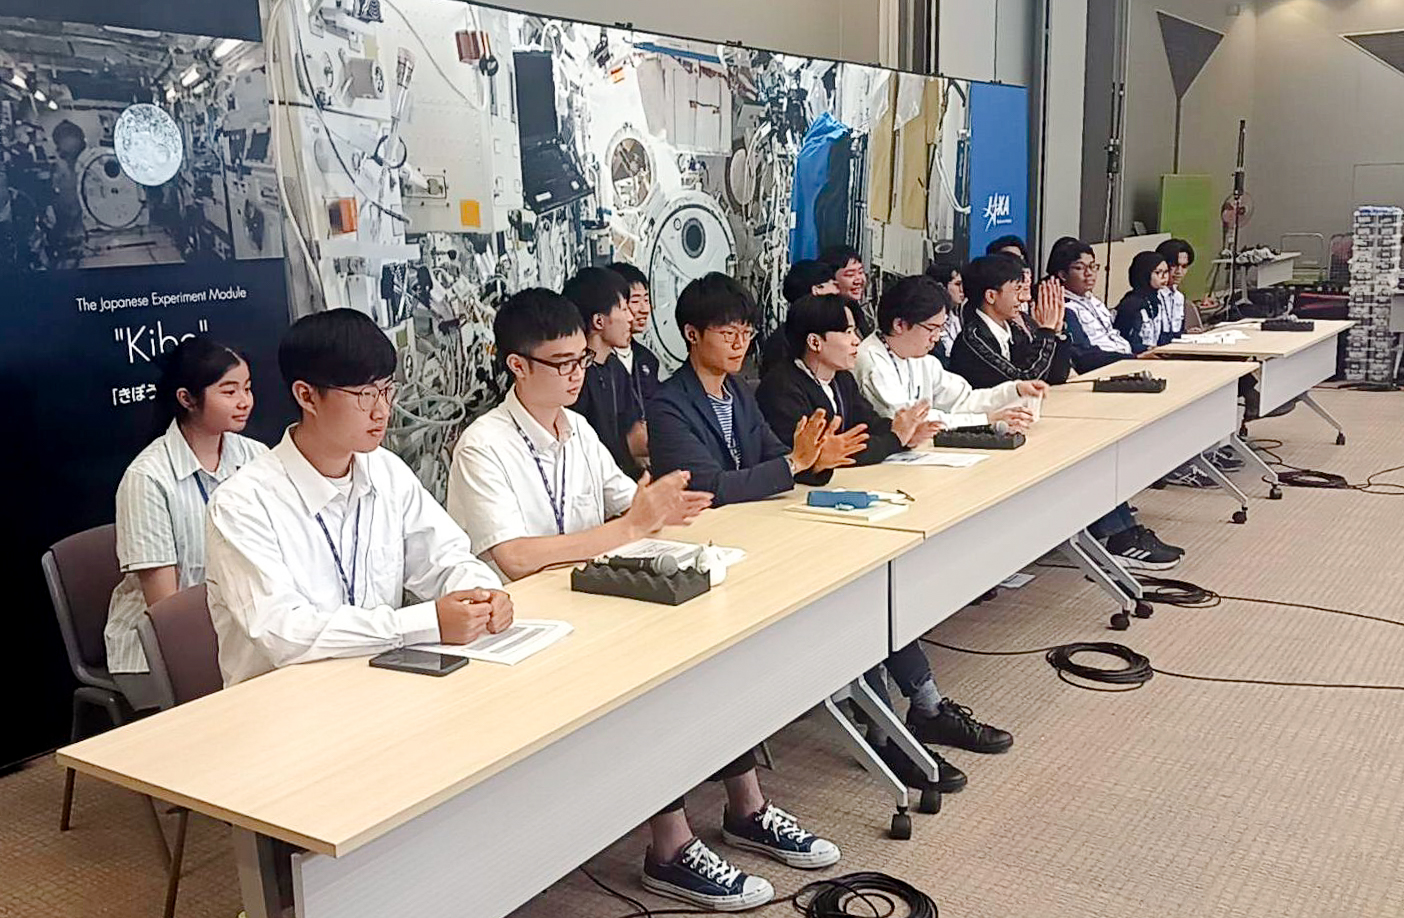 เยาวชนไทยเจ๋ง ! คว้าอันดับ 3 ศึกชิงแชมป์นานาชาติเขียนโปรแกรม ควบคุมหุ่นยนต์ Astrobee ผู้ช่วยนักบินอวกาศ ของ NASA